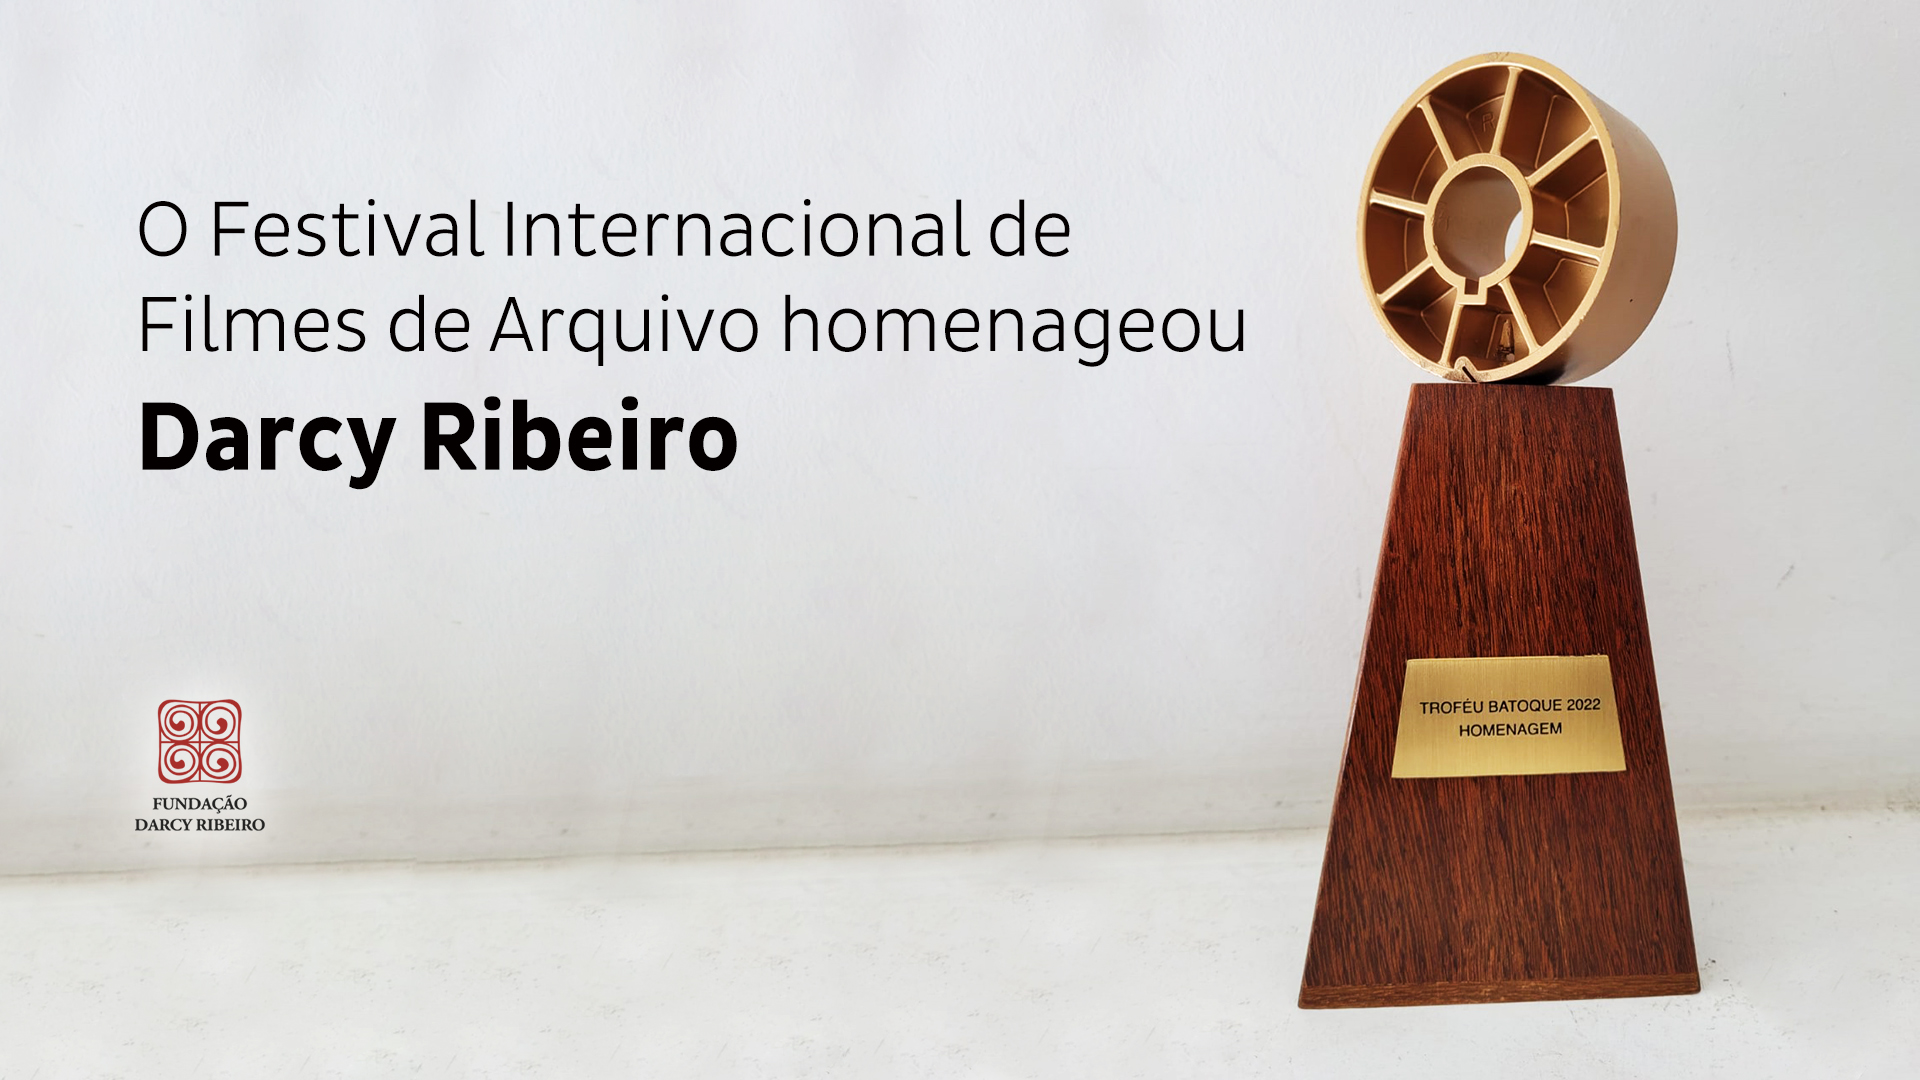 O Festival Internacional de Filmes de Arquivo homenageou Darcy Ribeiro